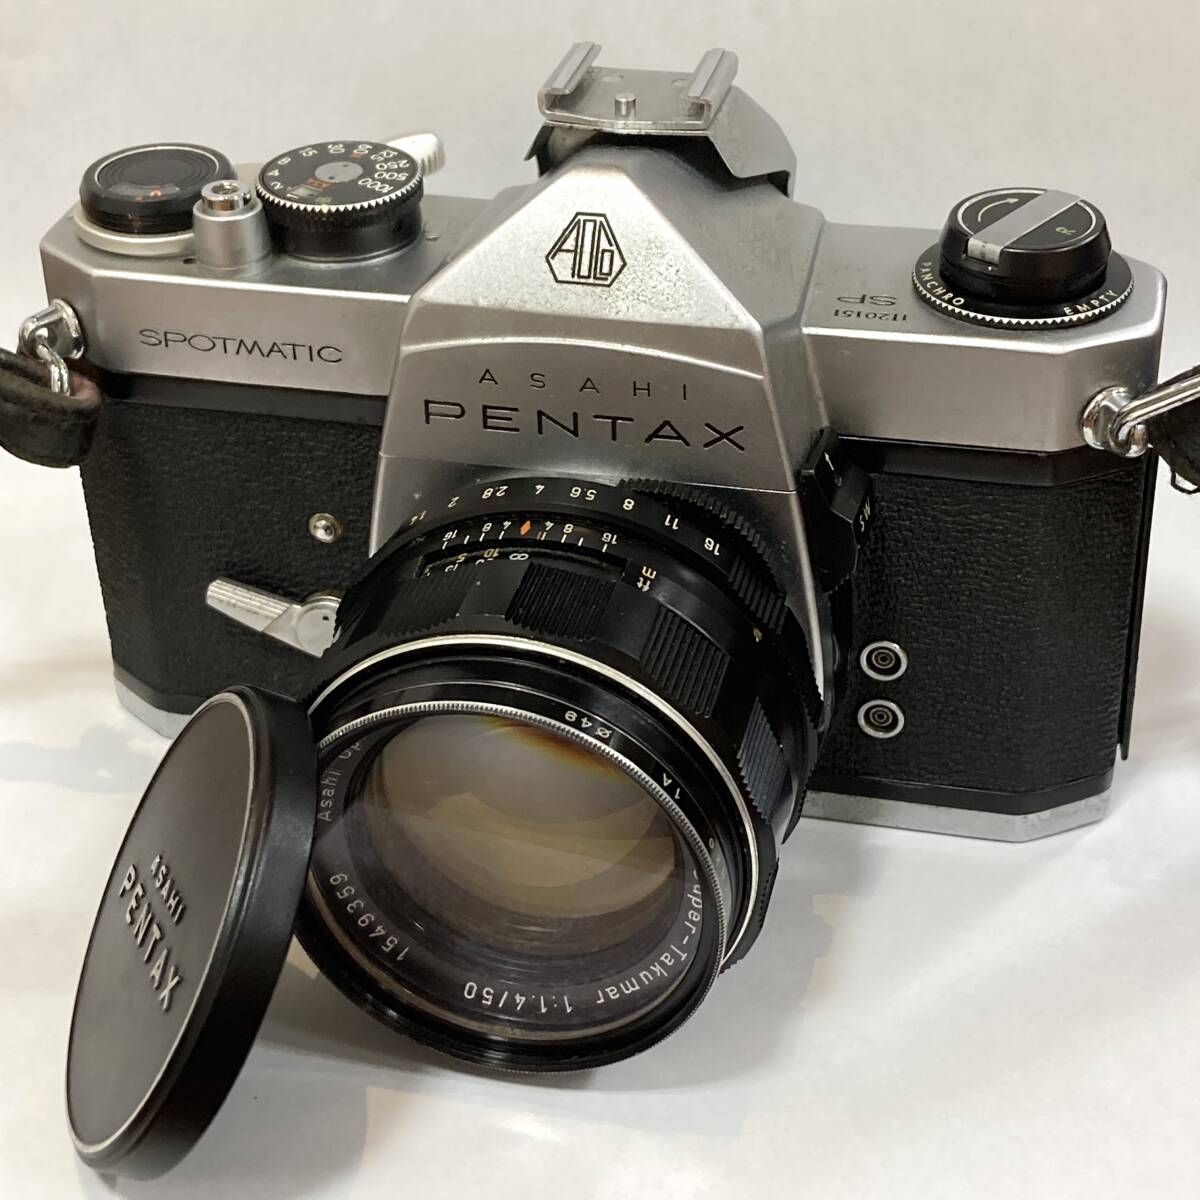 #1721 ASAHI PENTAX SPOTMATIC ペンタックス フィルムカメラ 50mm 1:1.4/50 レンズ 一眼レフカメラ レンズセット ジャンク品_画像1